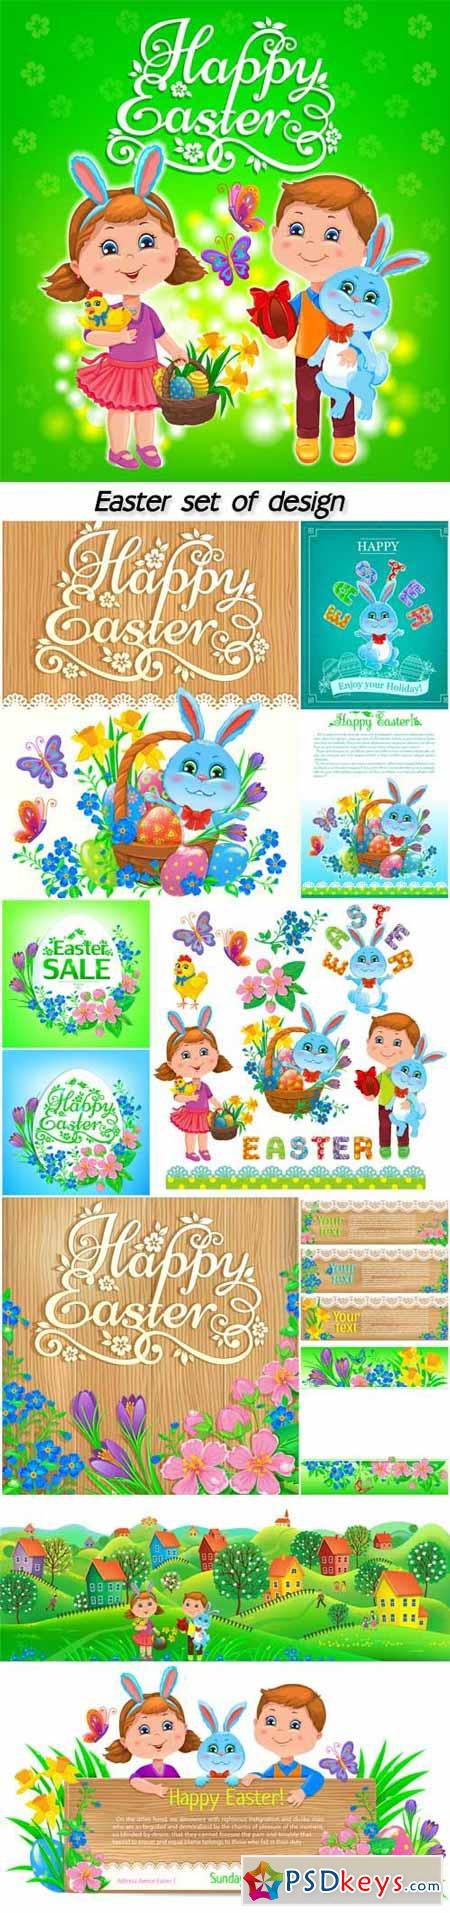 Easter set of design, happy easter kids